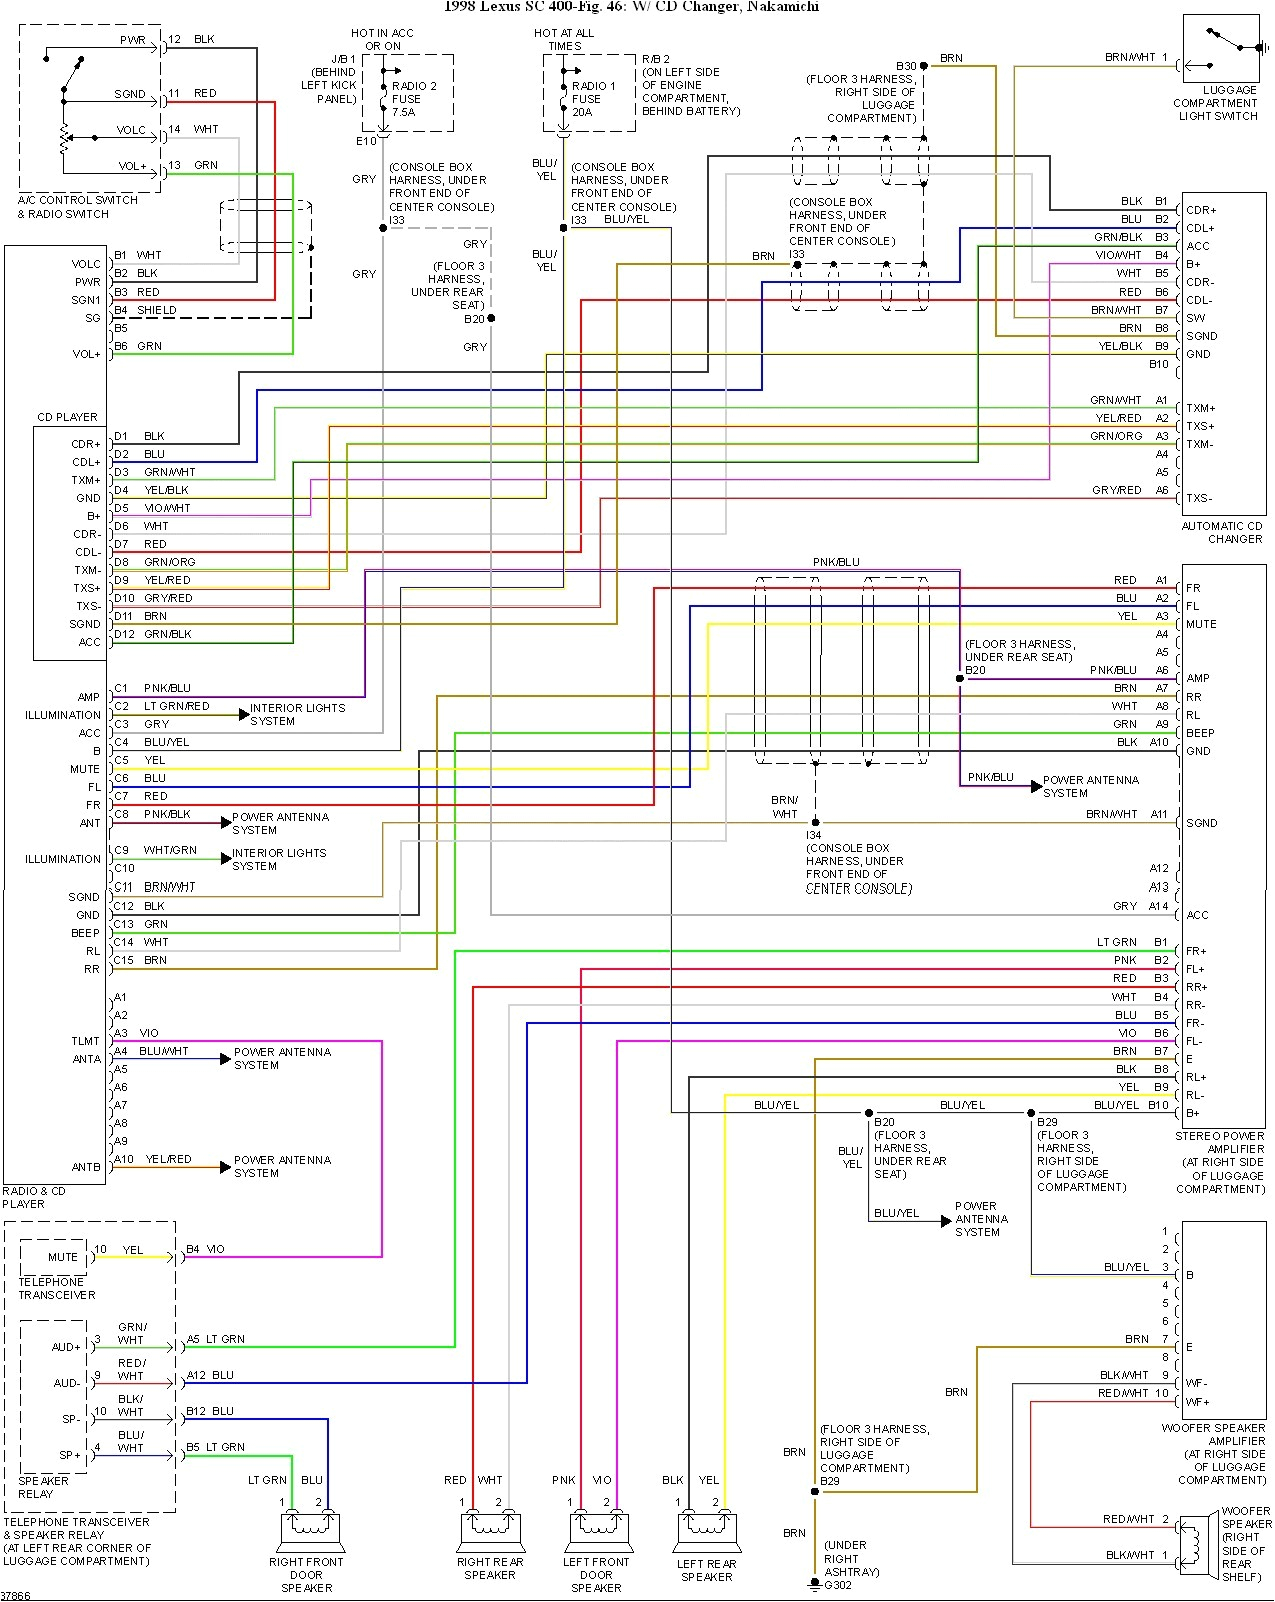 1998 lexus es 300 wiring diagram new wiring diagramlexus es300 wiring diagram wiring diagram article 1998